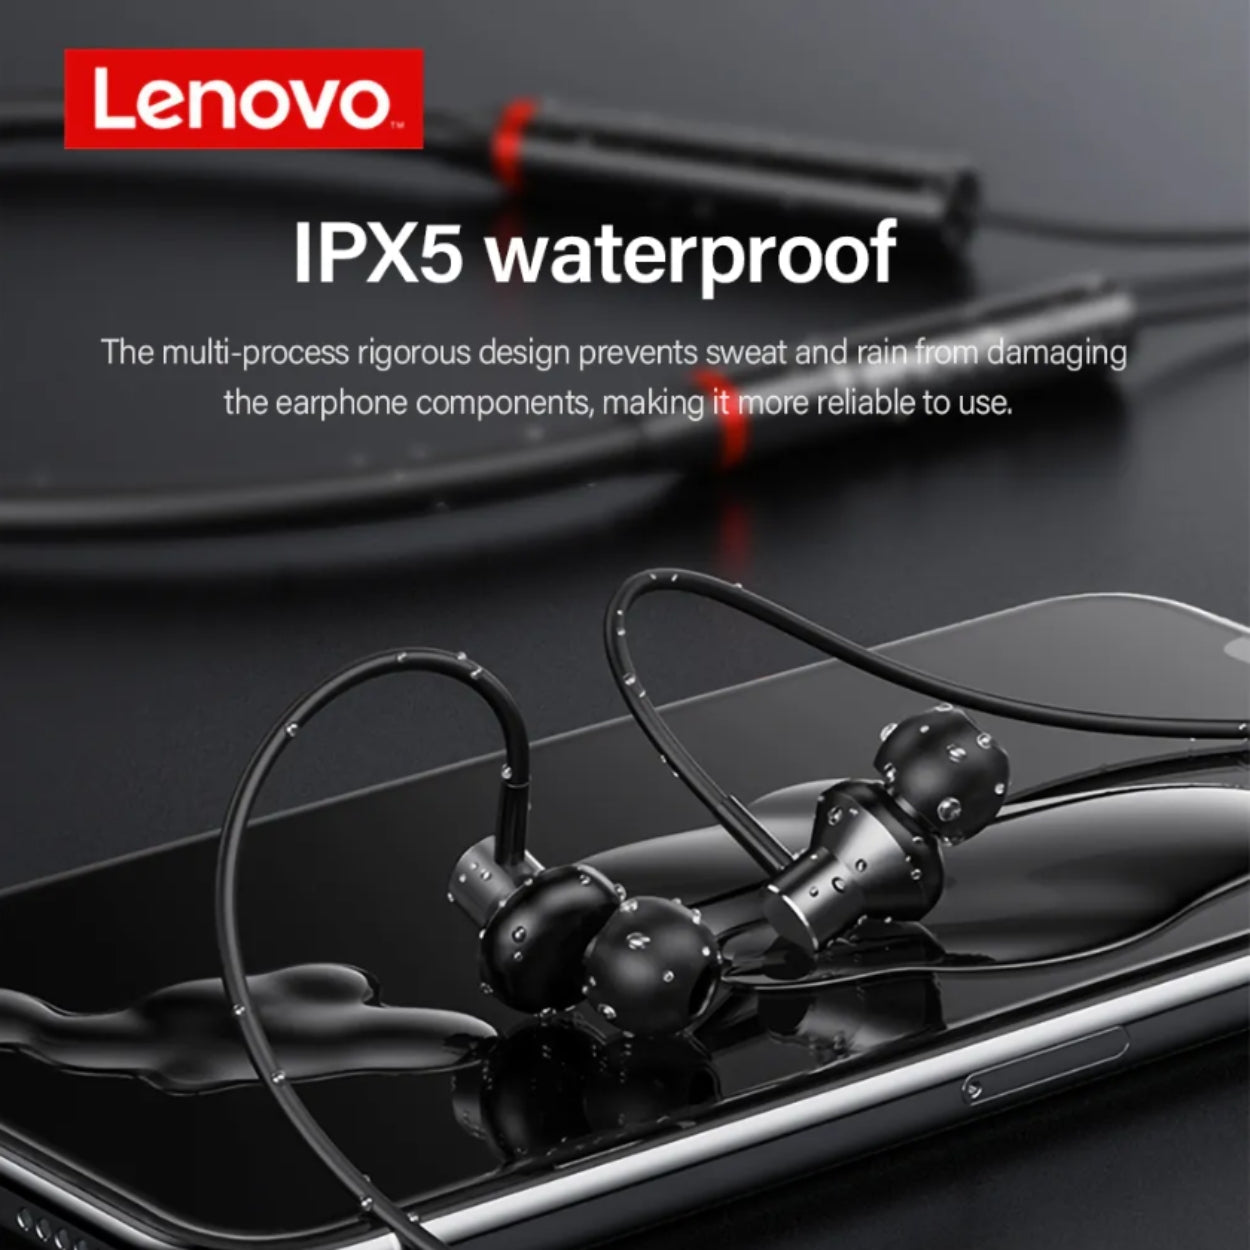 PR Audifono Bluetooth Lenovo He05x negro + lentes de sol